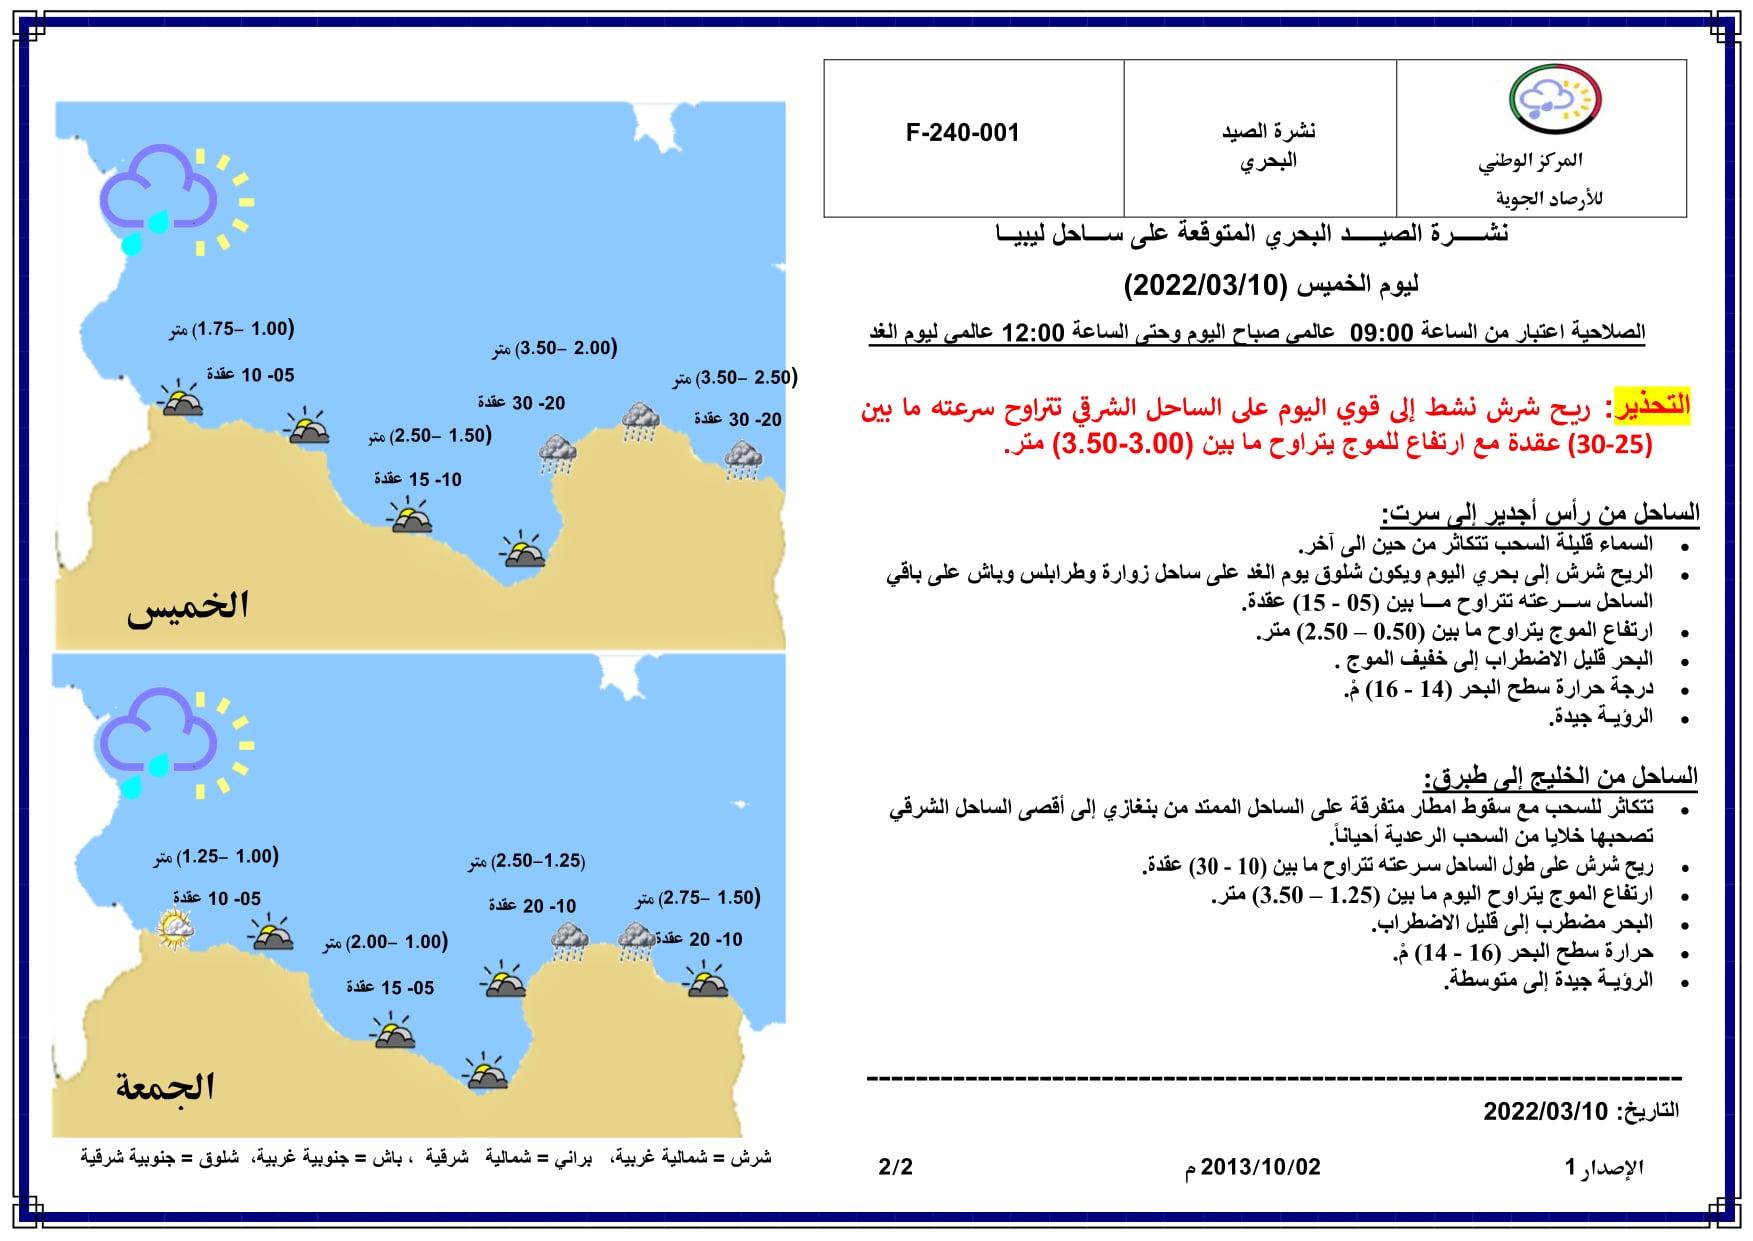 نشرة الأحوال الجوية والصيـــــد البحري المتوقعة على ليبيا